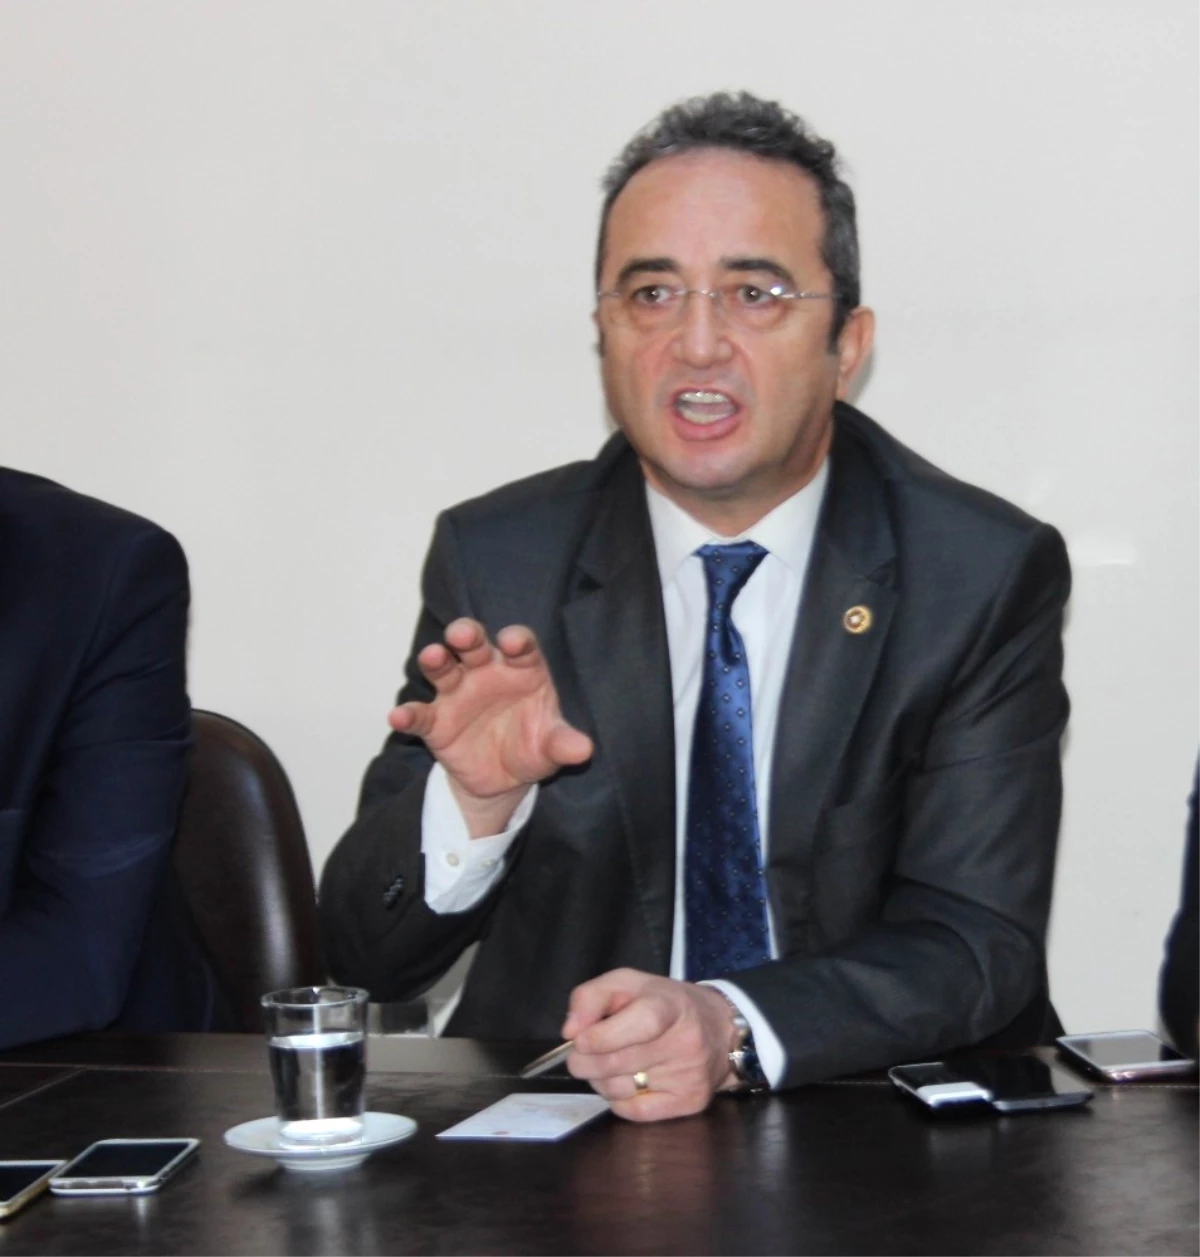 CHP Genel Başkan Yardımcısı Tezcan: "Sandıkların Güvenliğinden Kimse Endişe Etmesin"